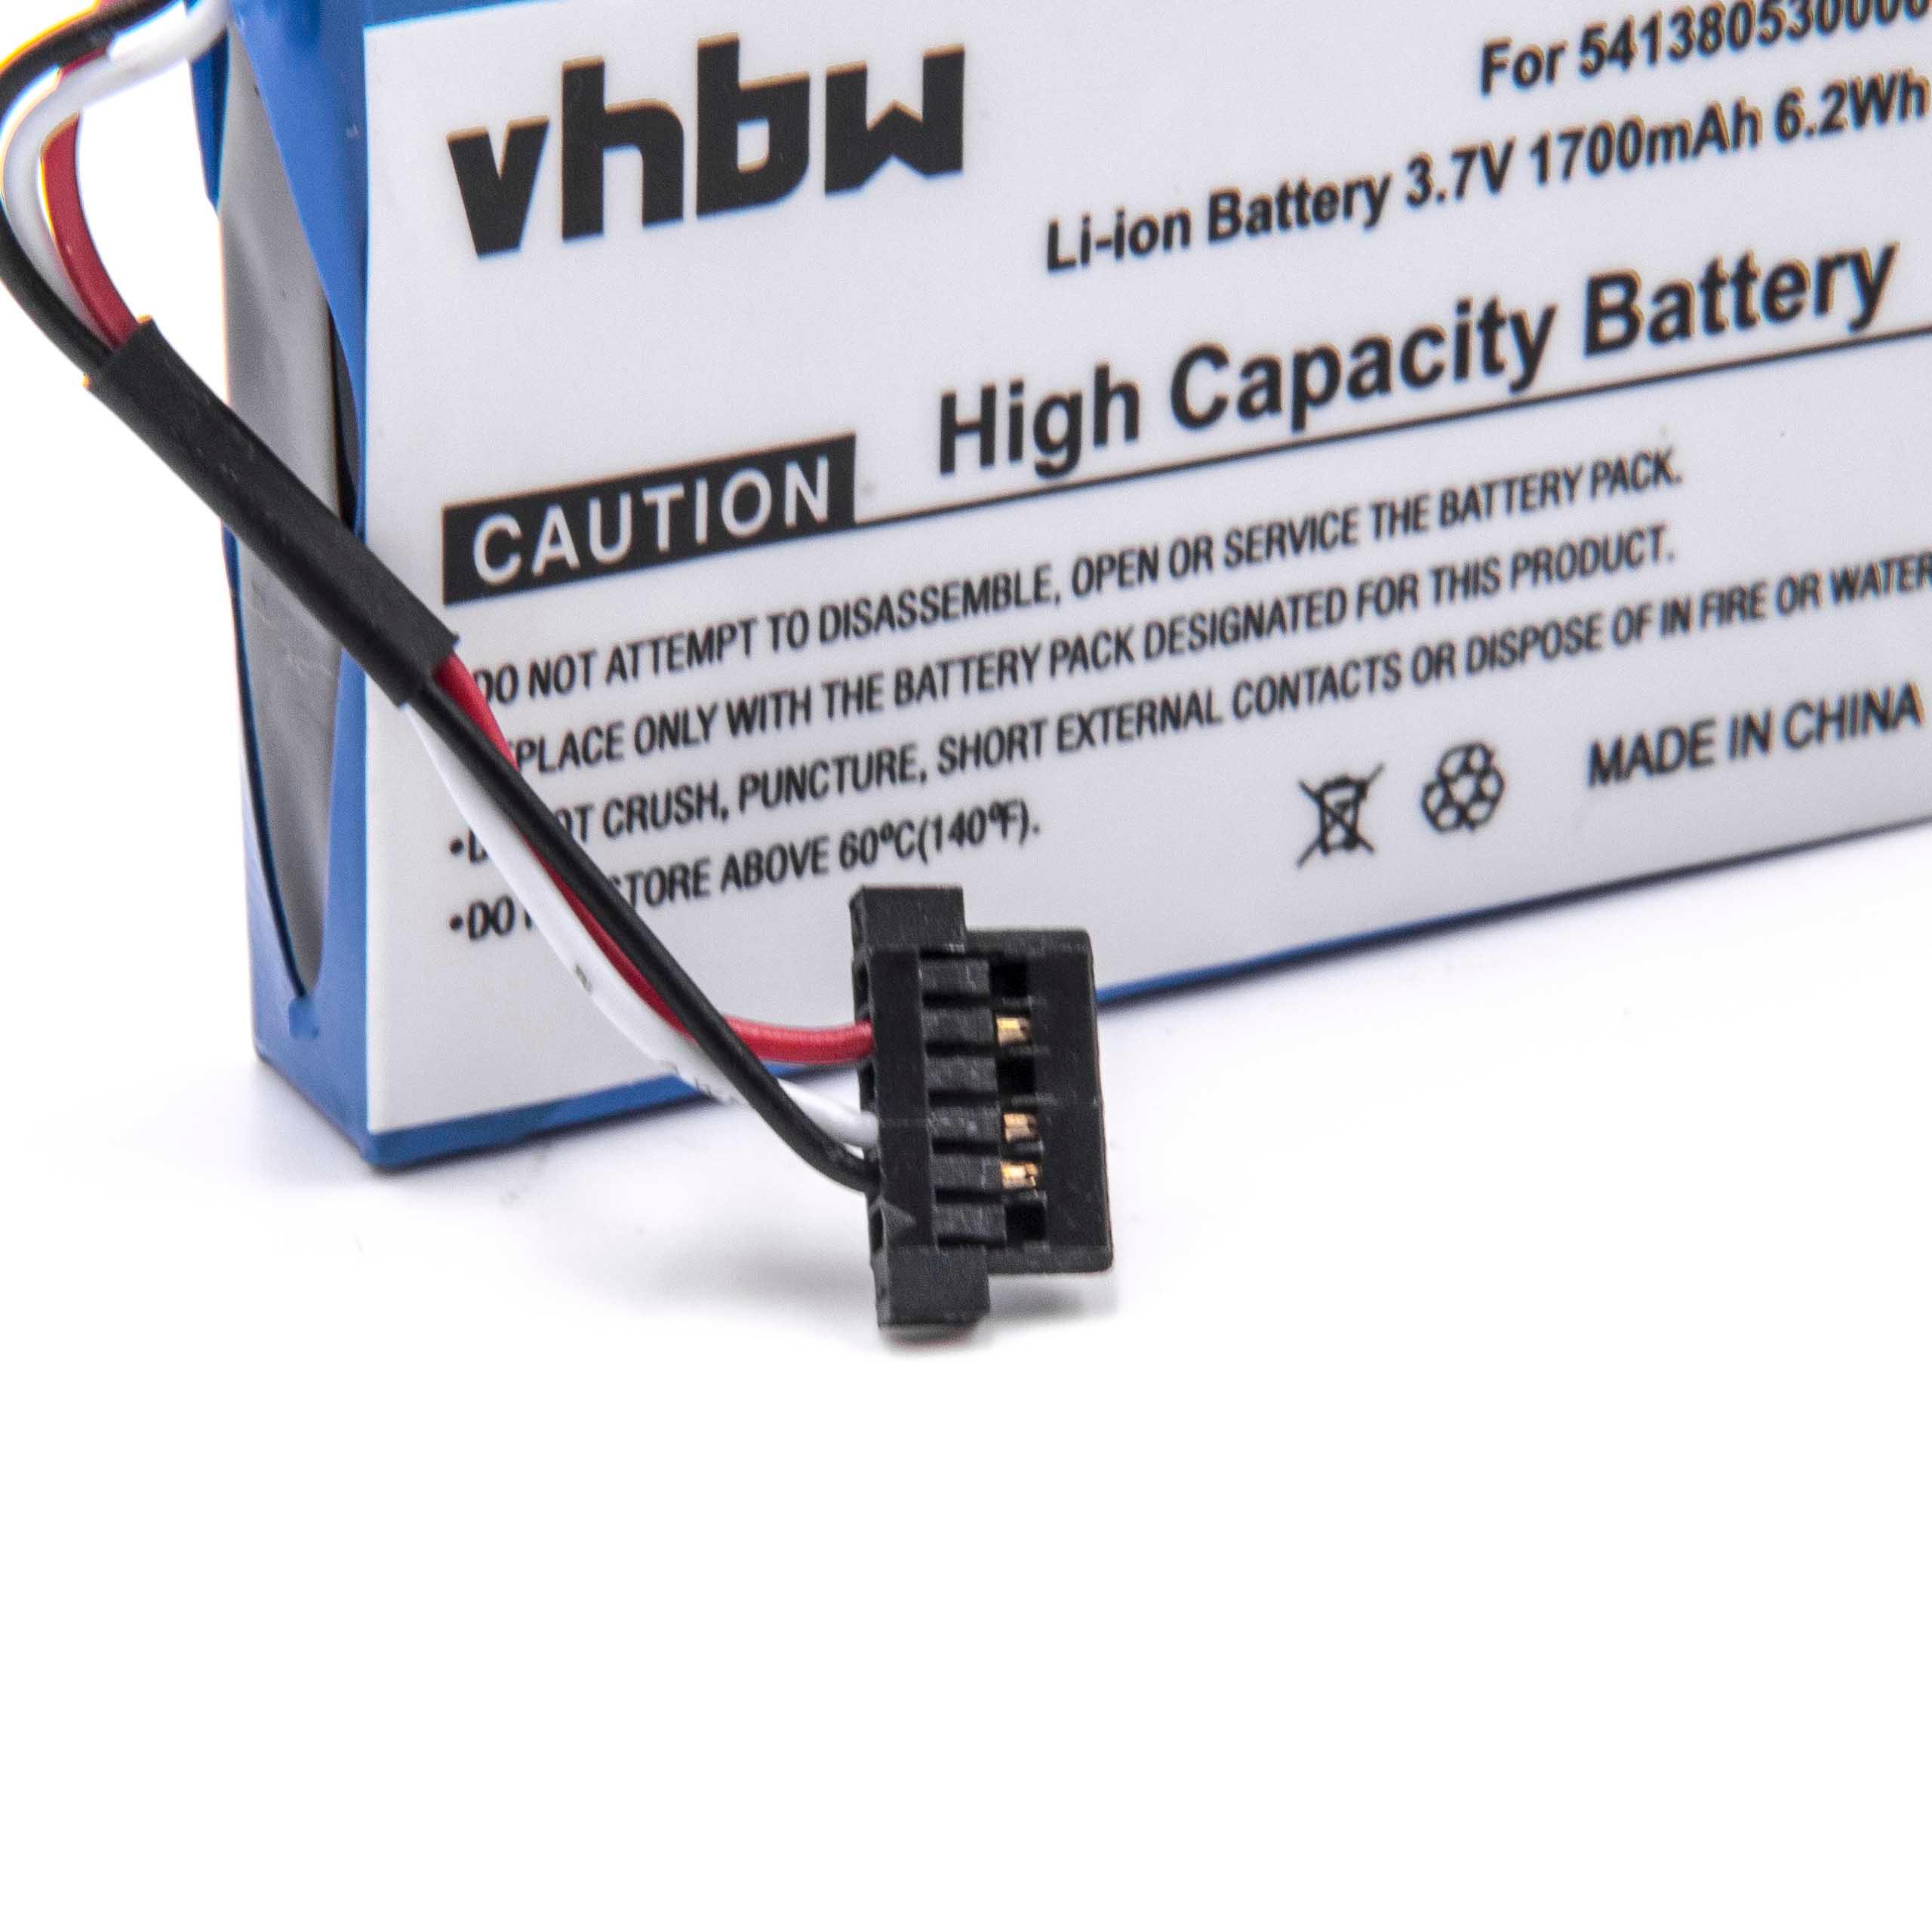 Batterie remplace BPLP720/11-A1 B, SJM120, 541380530006 pour navigation GPS - 1700mAh 3,7V Li-ion